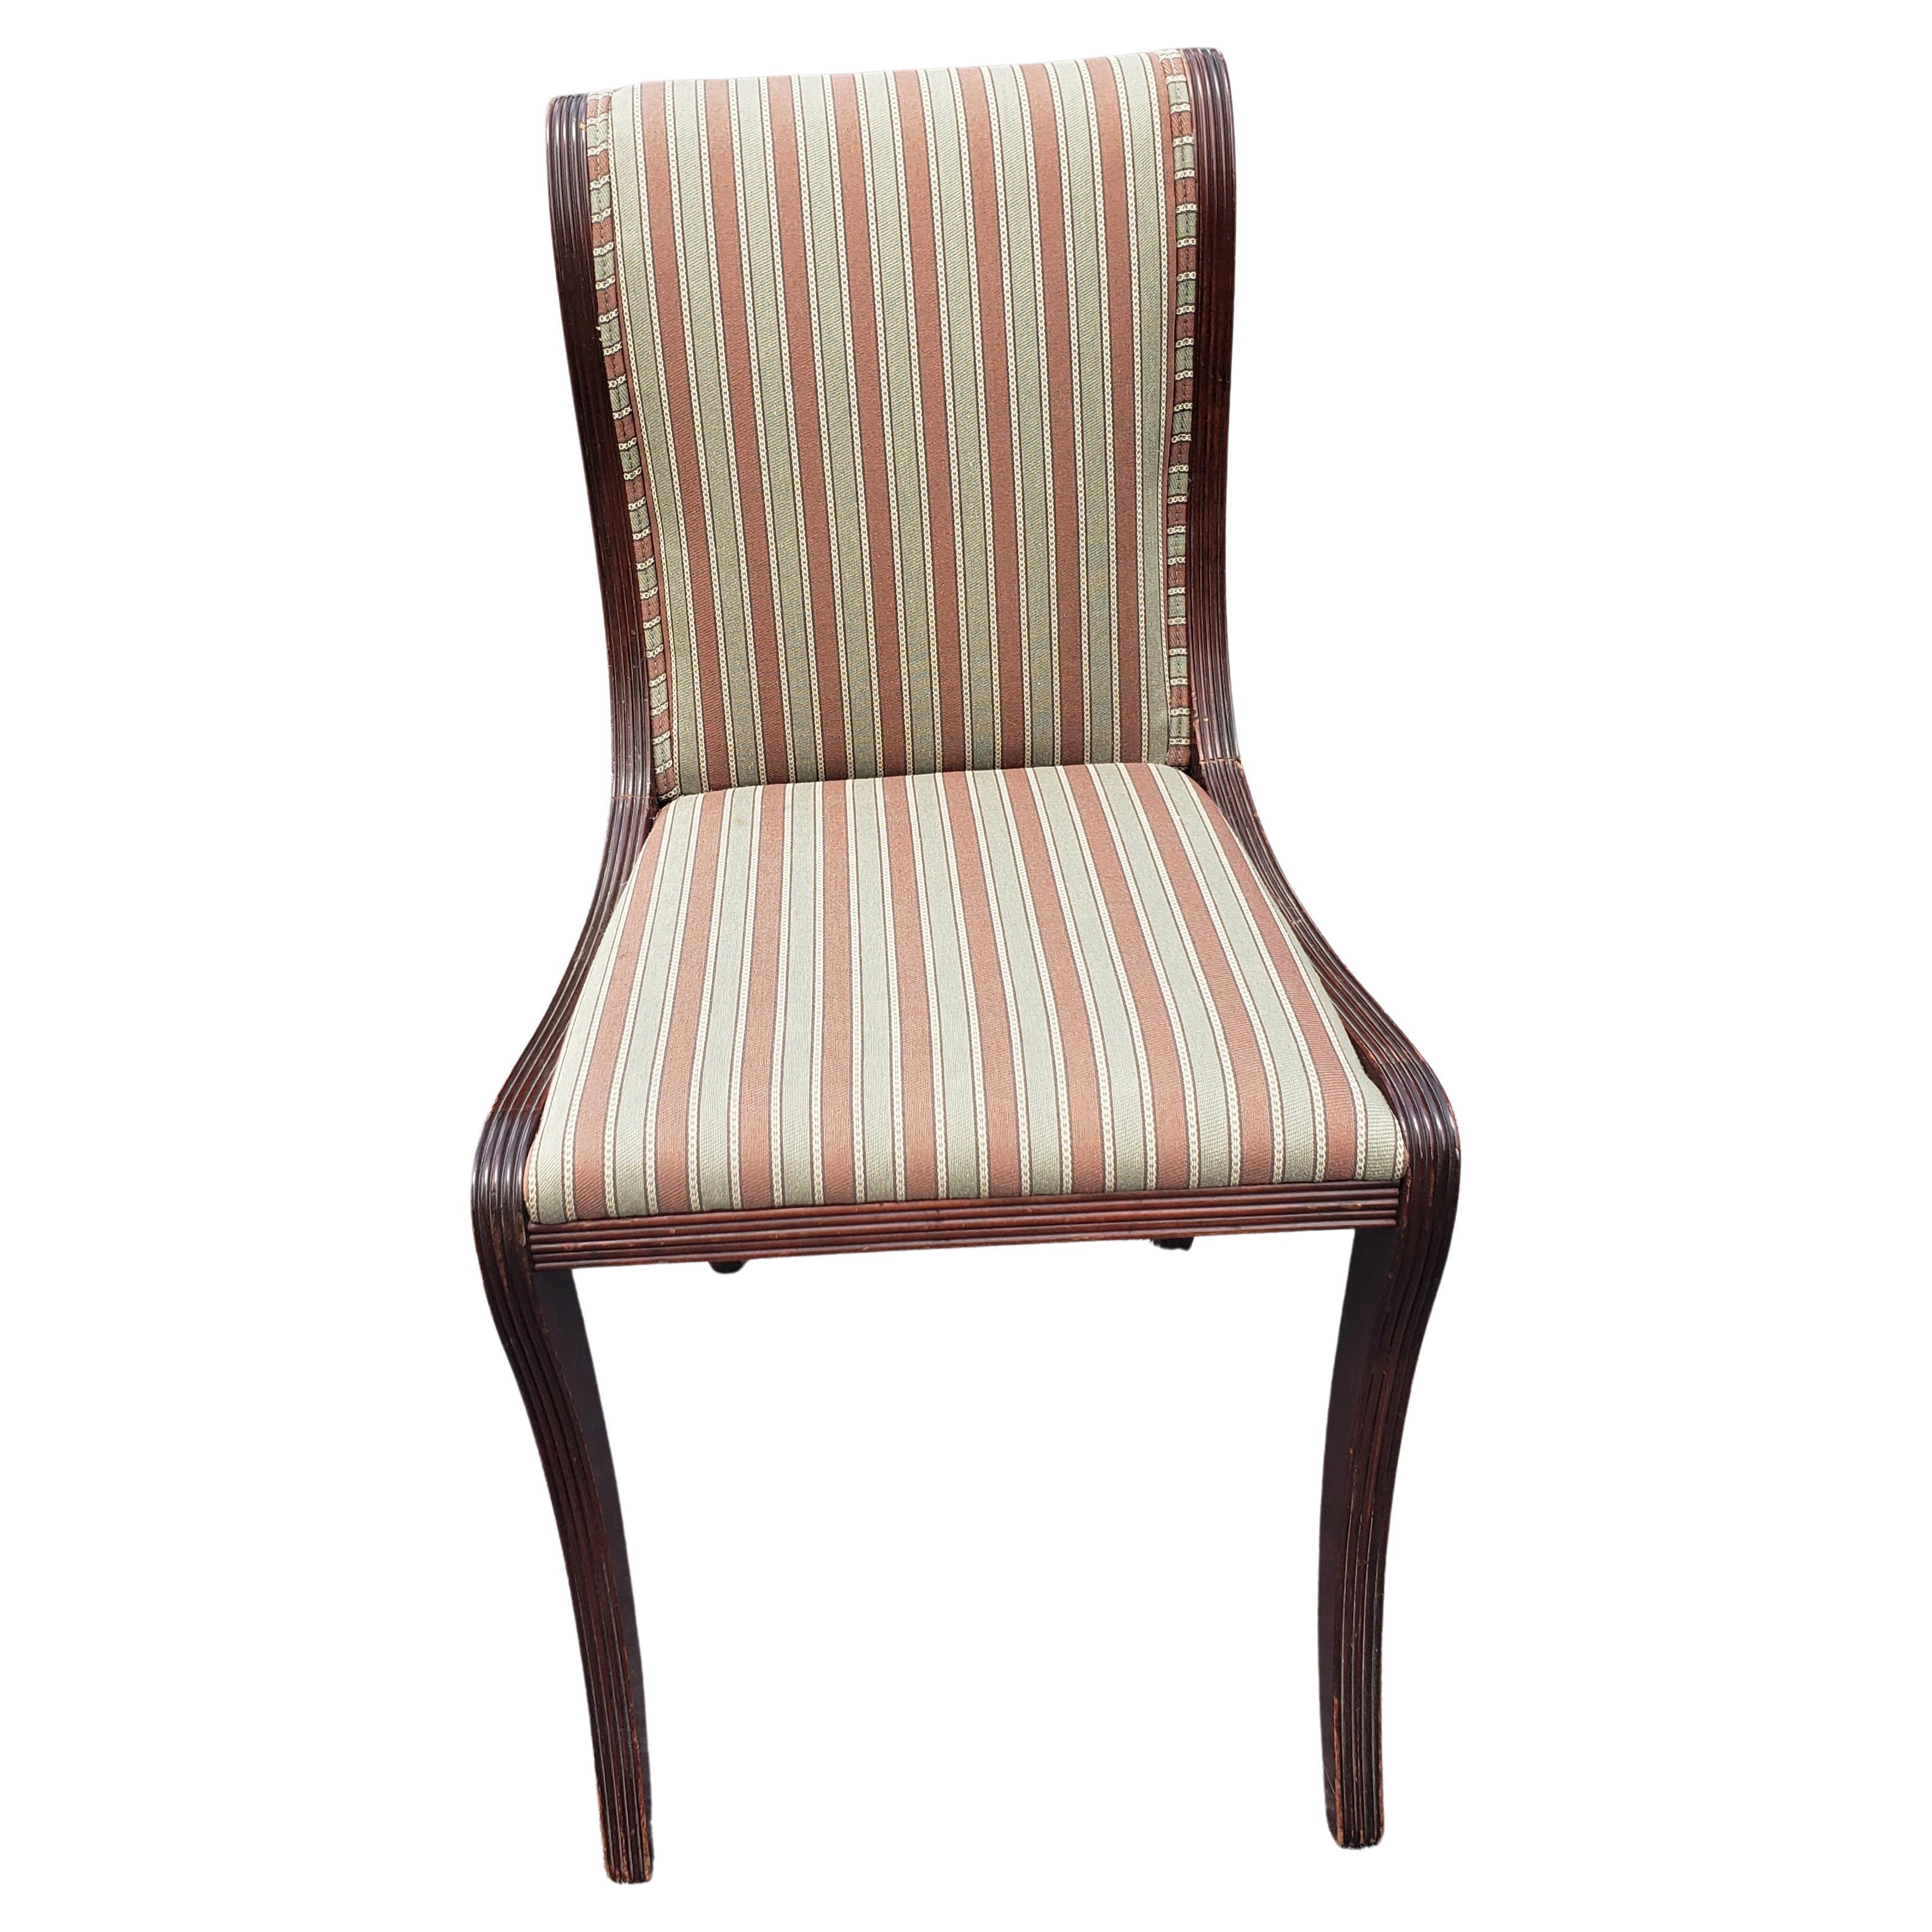 Une paire de chaises en acajou de style Duncan Phyfe avec tapisserie rayée. Très bon état vintage.
Les chaises ont été retapissées en cours de route. Mesure 17